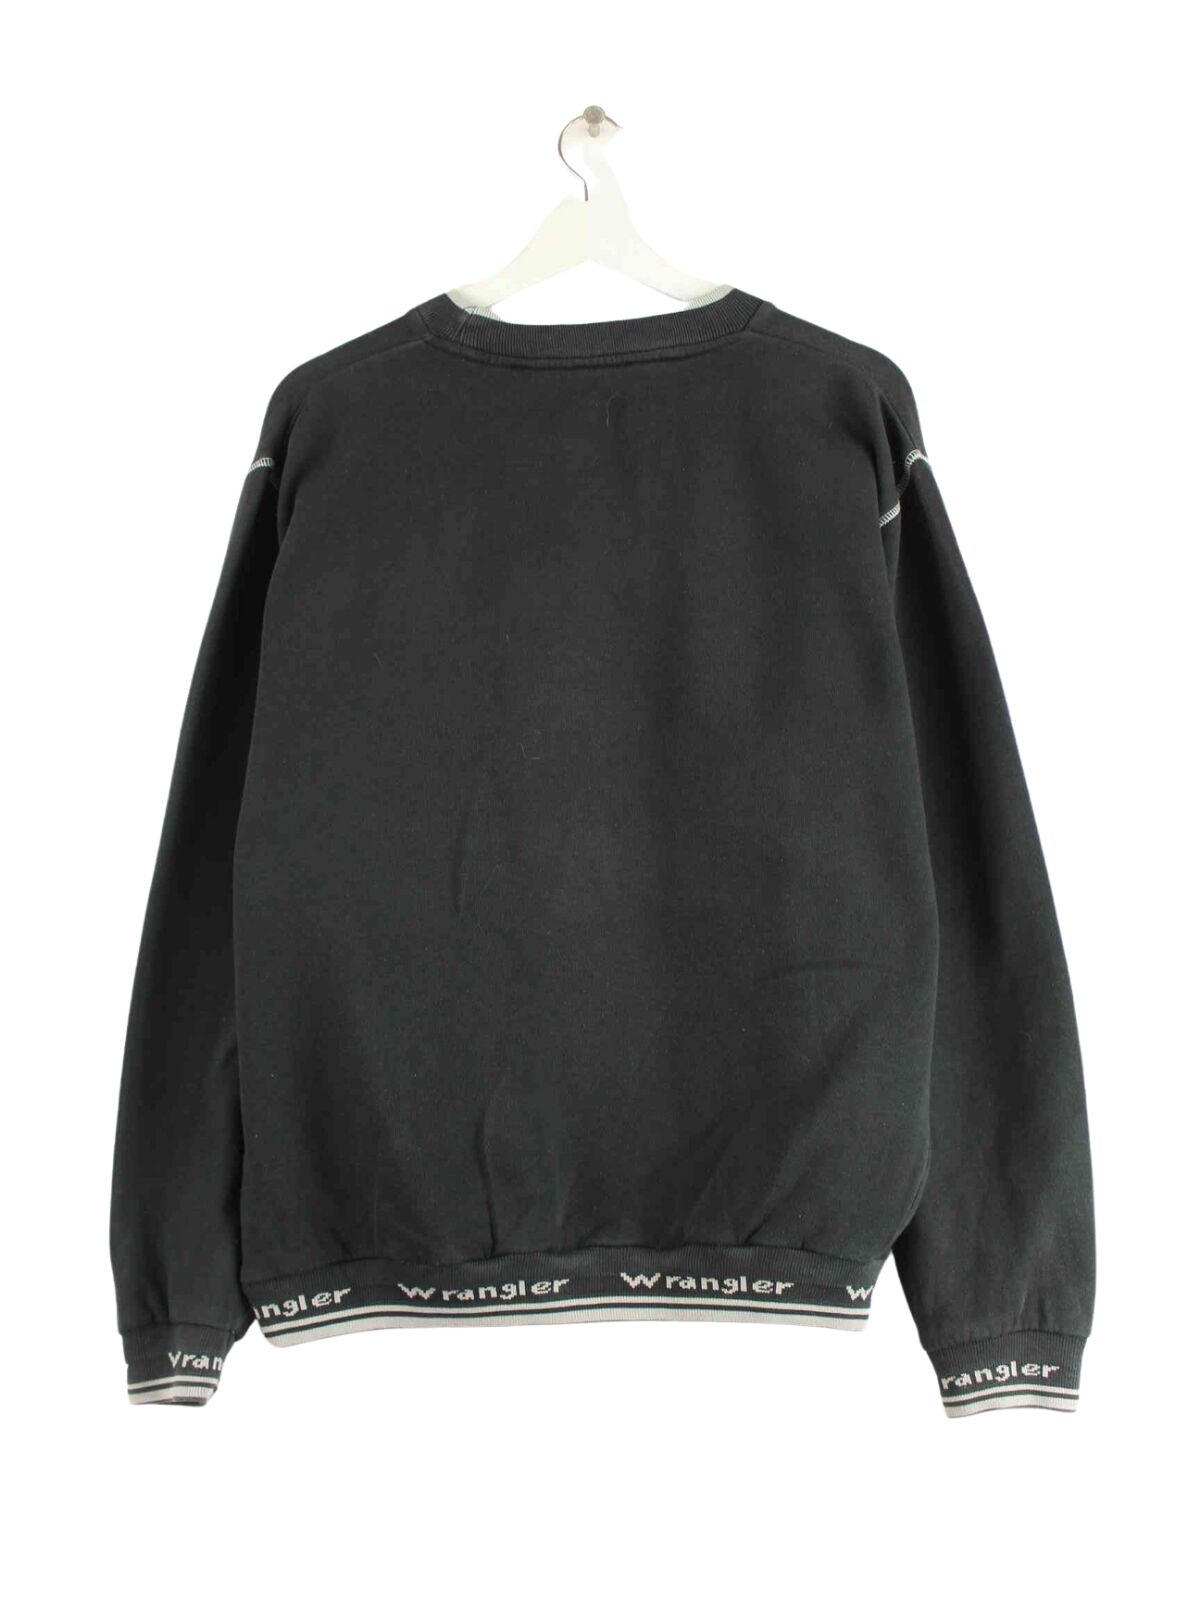 Wrangler 90s Sweater Schwarz S (back image)